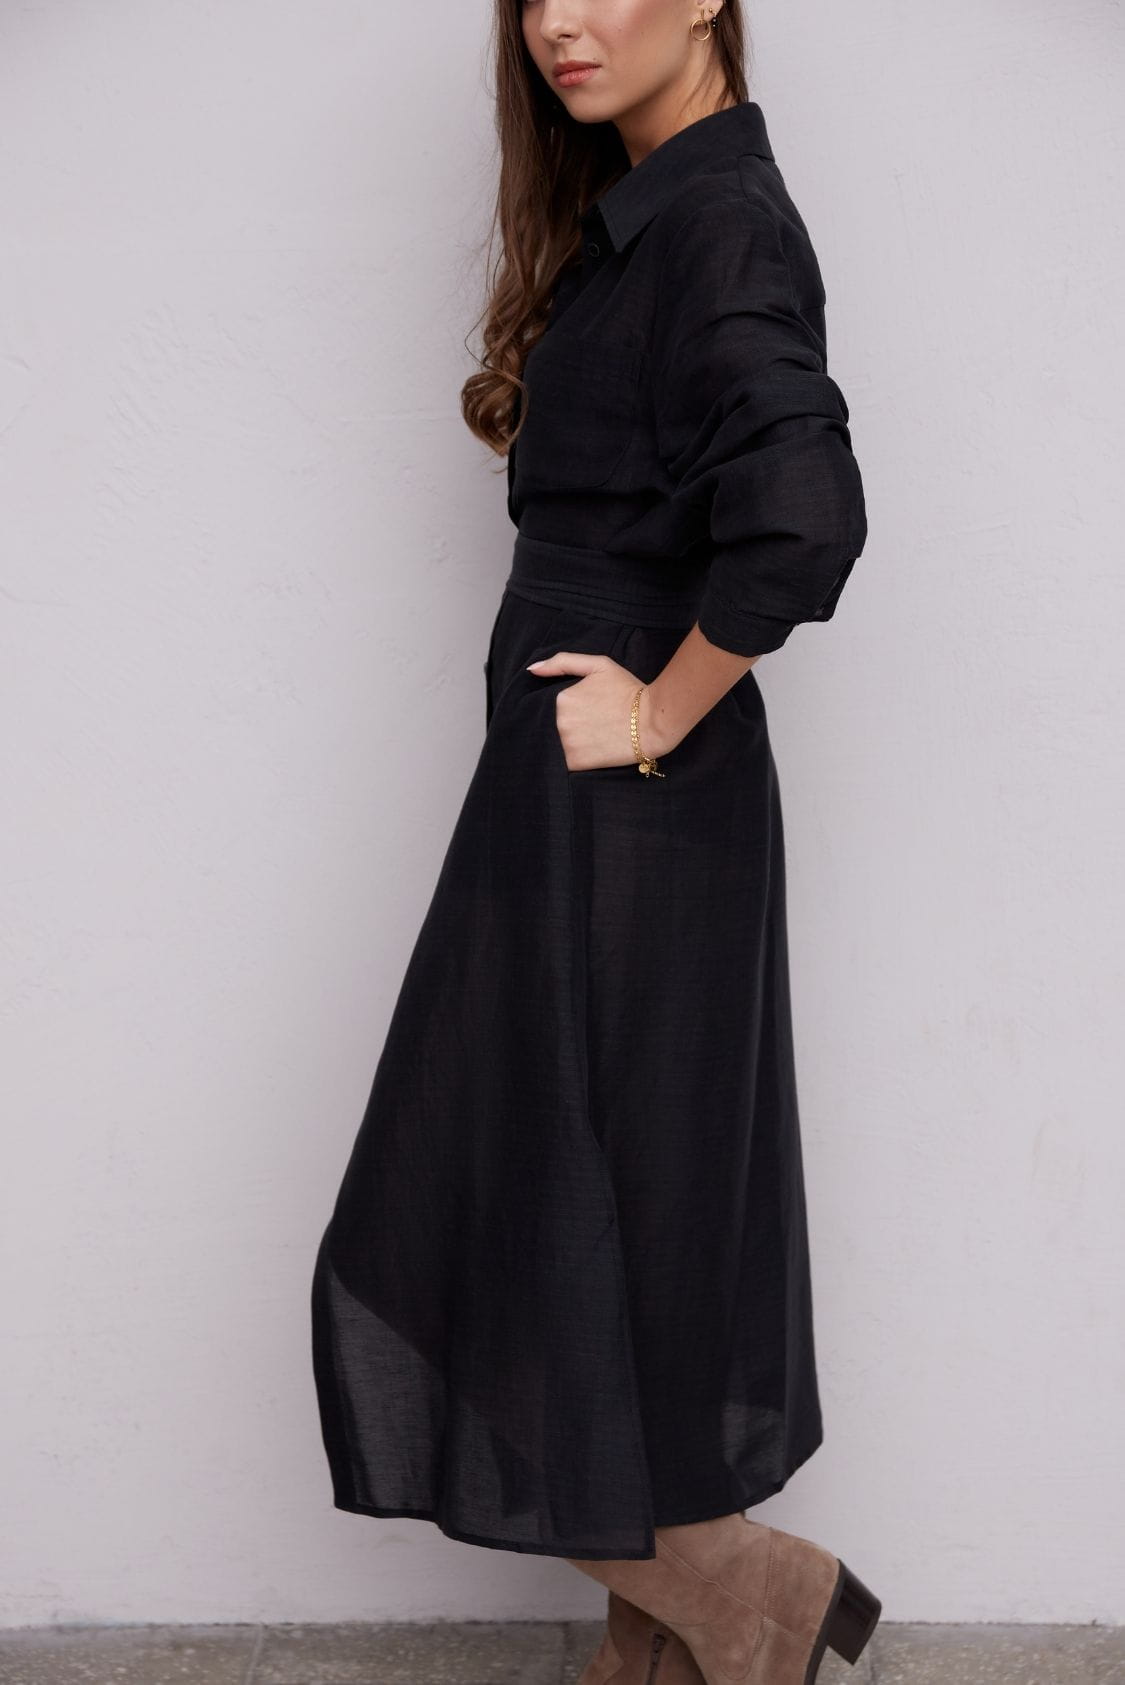 Sukienka koszulowa długa, maxi z lnu, czarna - Holystic